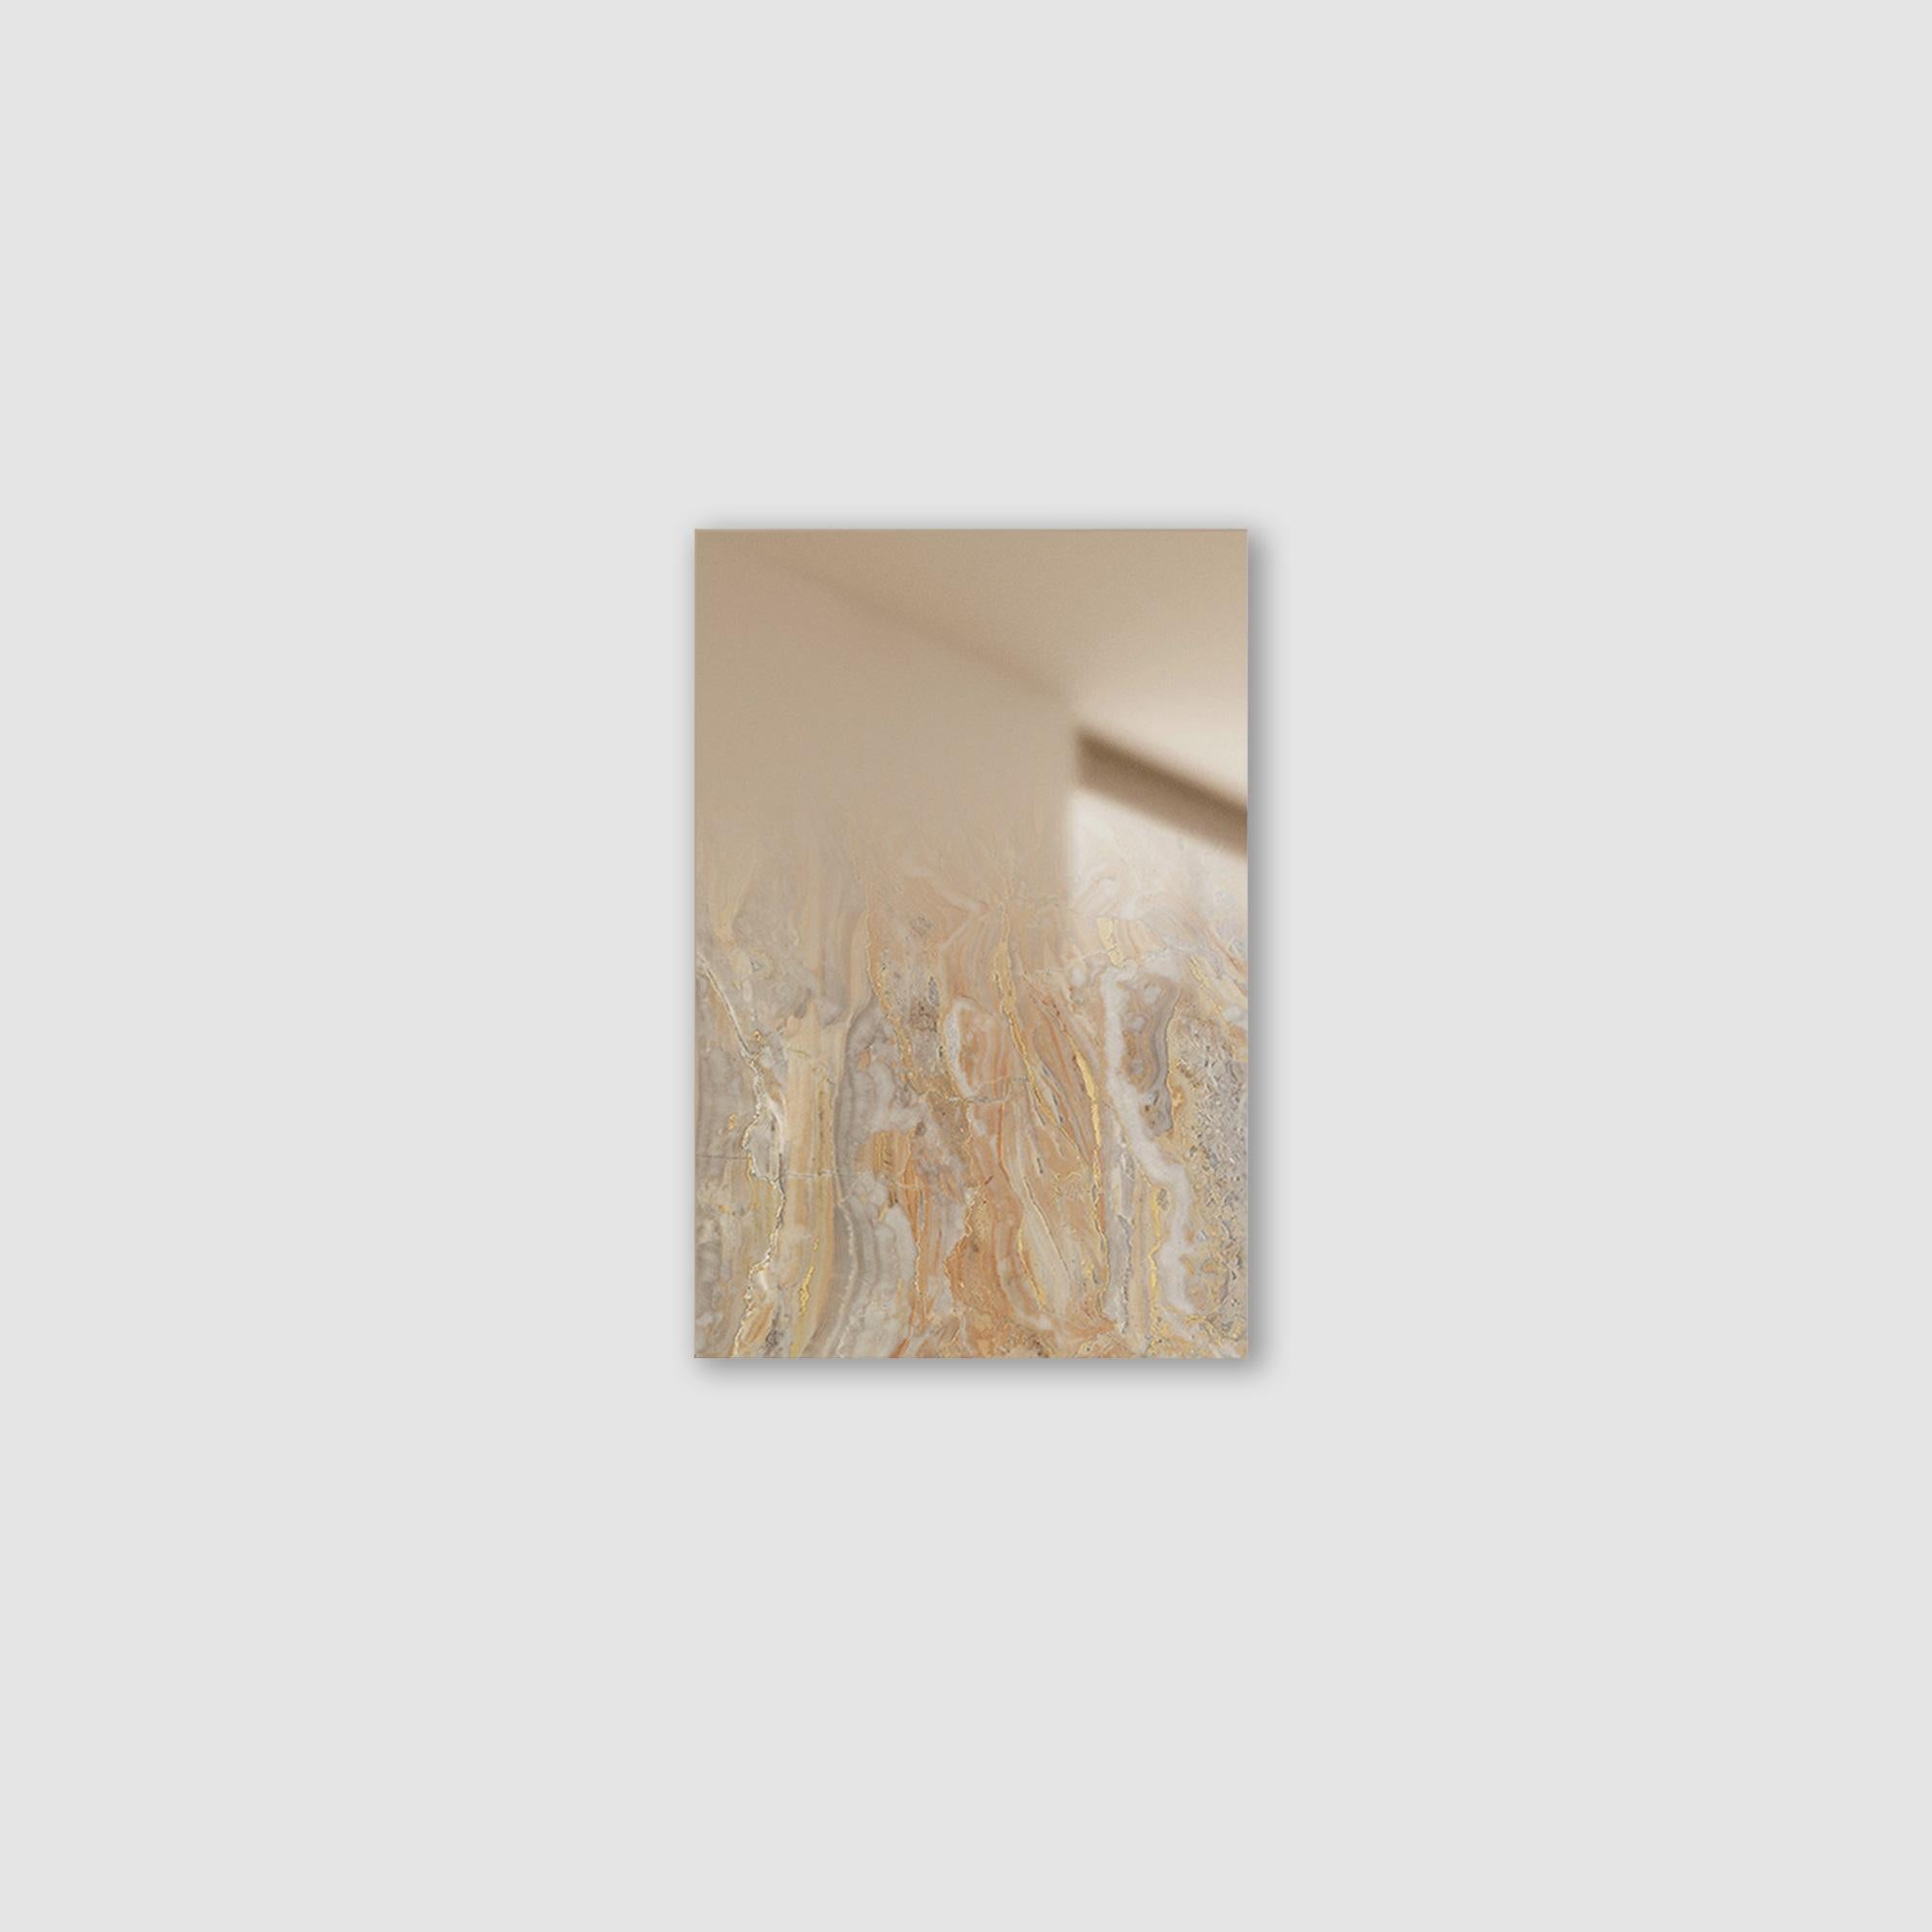 Miroir Zero XS Revamp 02 de Formaminima
Édition limitée à 200 pièces. 
Dimensions : D 0,5 x L 21,5 x H 29 cm. 
Matériaux : Structure en tôle avec supports métalliques encastrés, superposés
Marbre massif extra-plat Arabescato Orobico gris et orange,